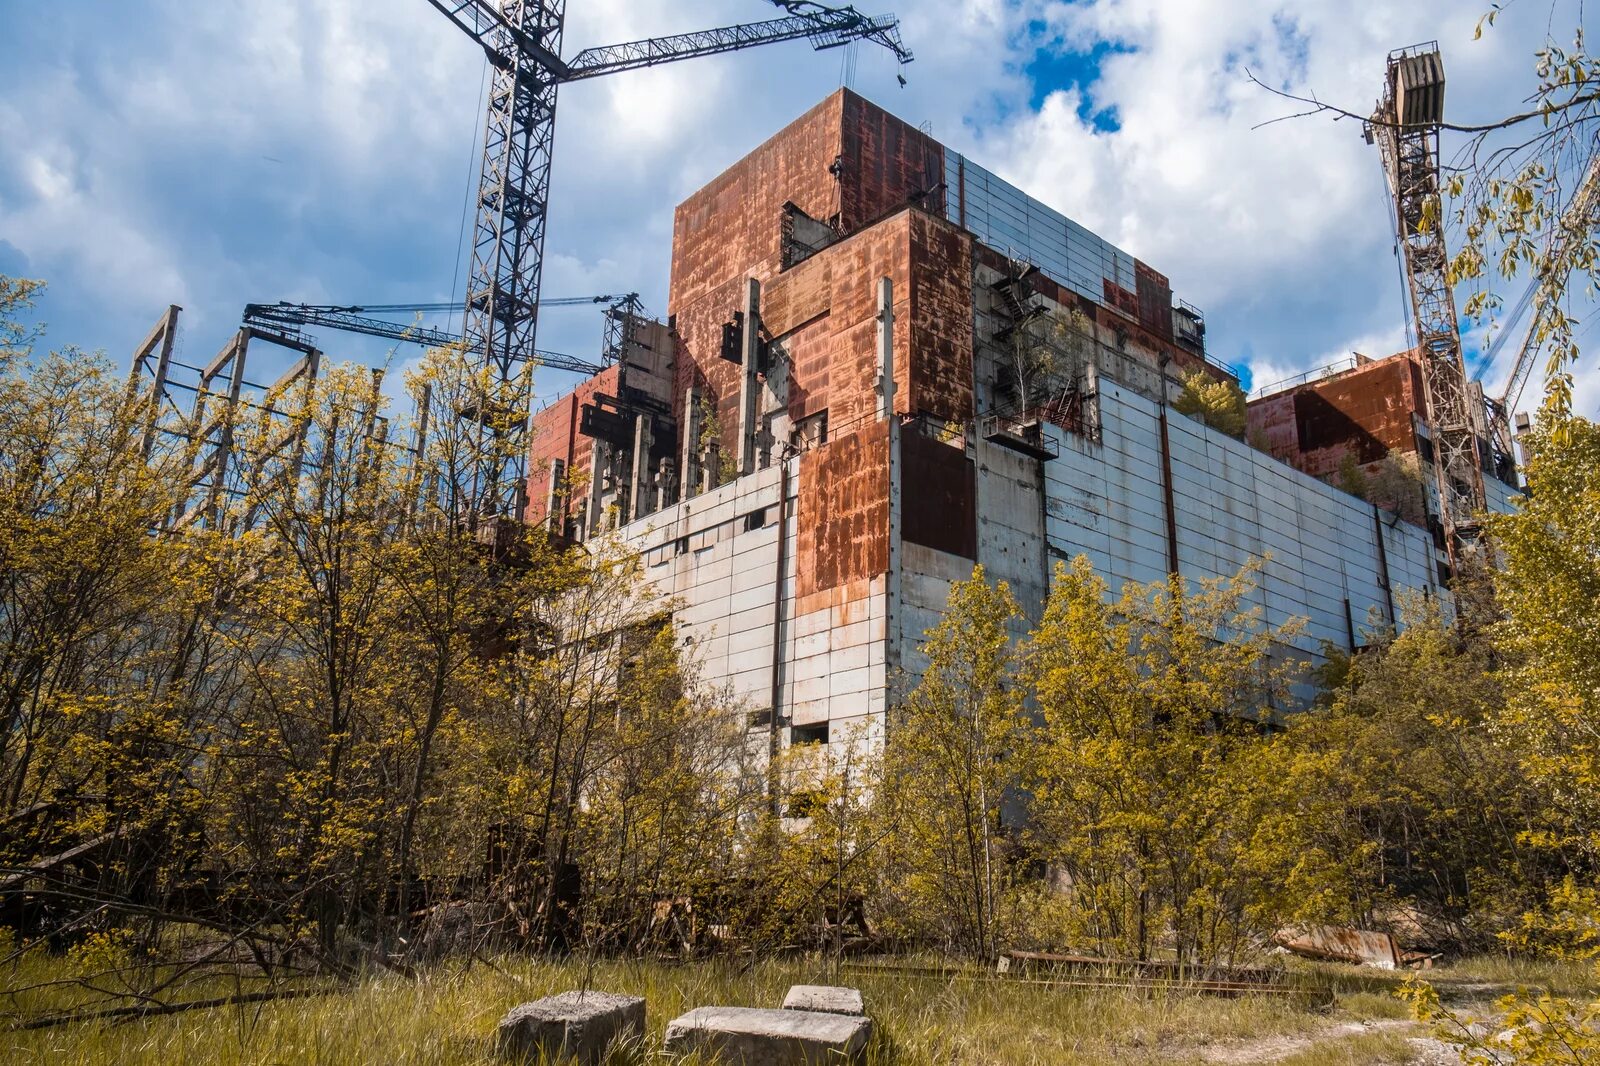 Припять Чернобыль ЧАЭС зона отчуждения. Чернобыль зона отчуждения ЧАЭС. Чернобыль зона ЧАЭС. Припять четвертый энергоблок. Chernobyl zone